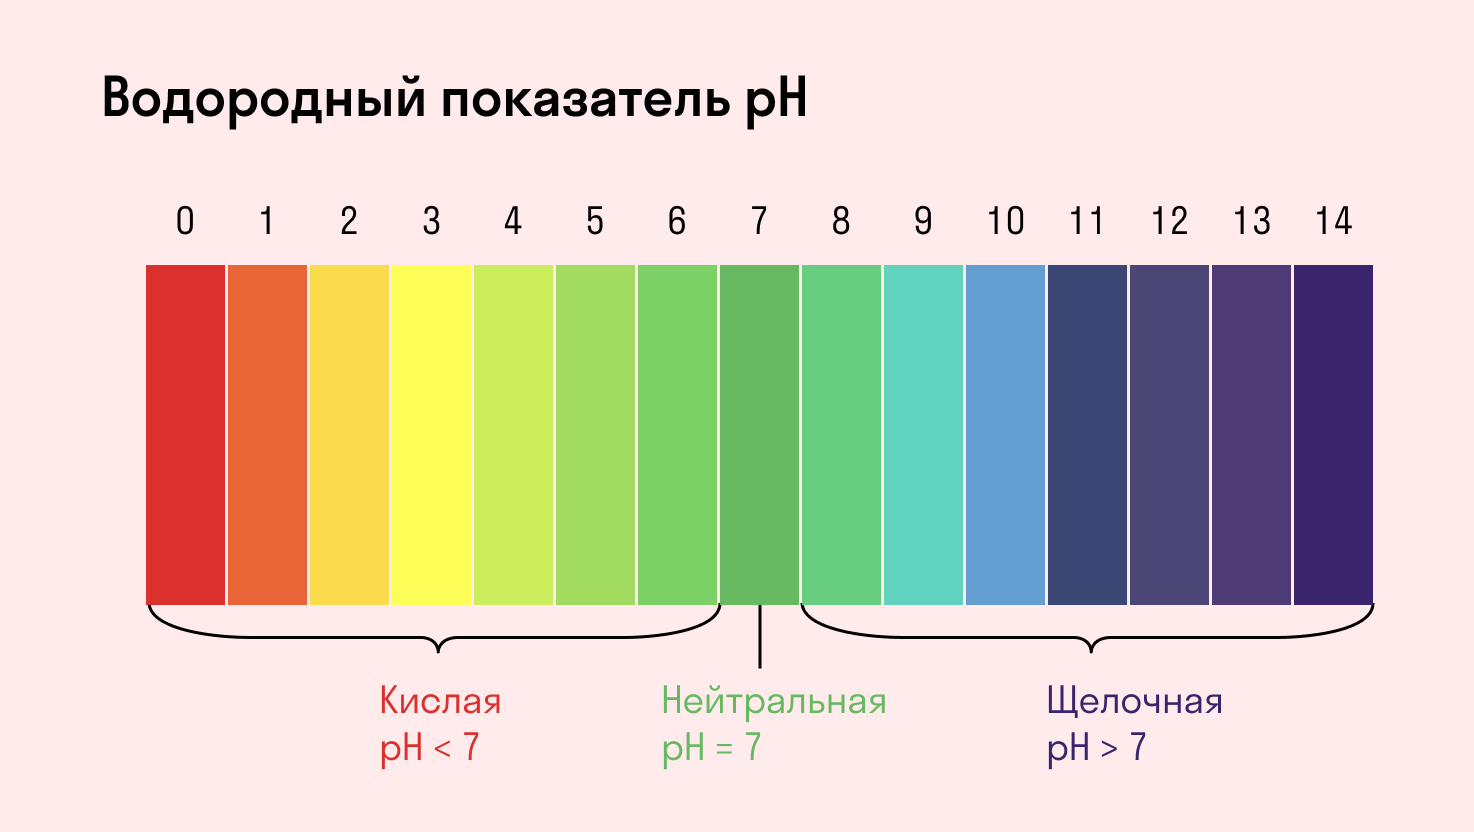 Водородный показатель pH